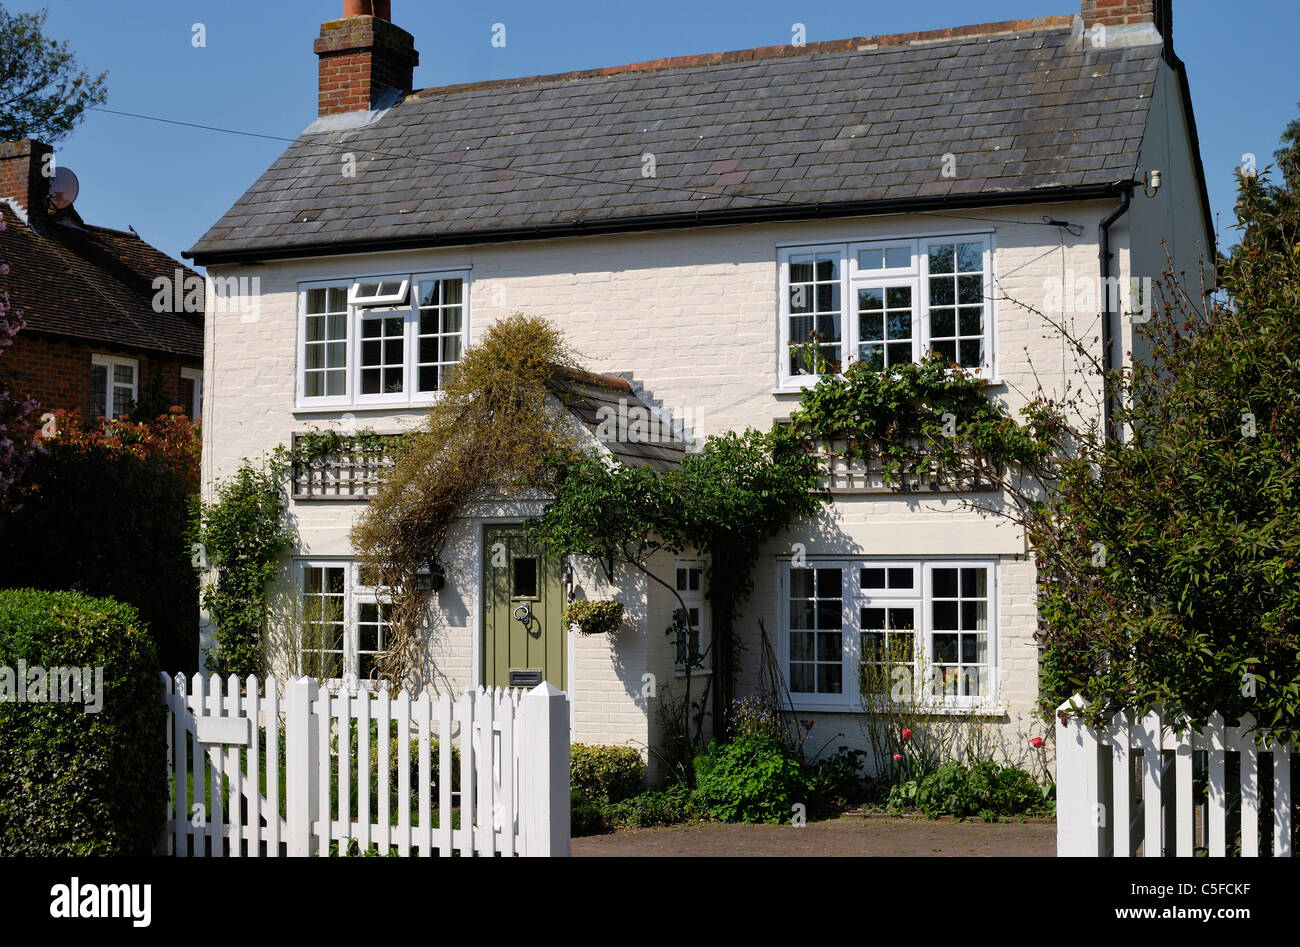 Joli Cottage en briques peintes dans le village de Shoreham, Kent, Angleterre Banque D'Images